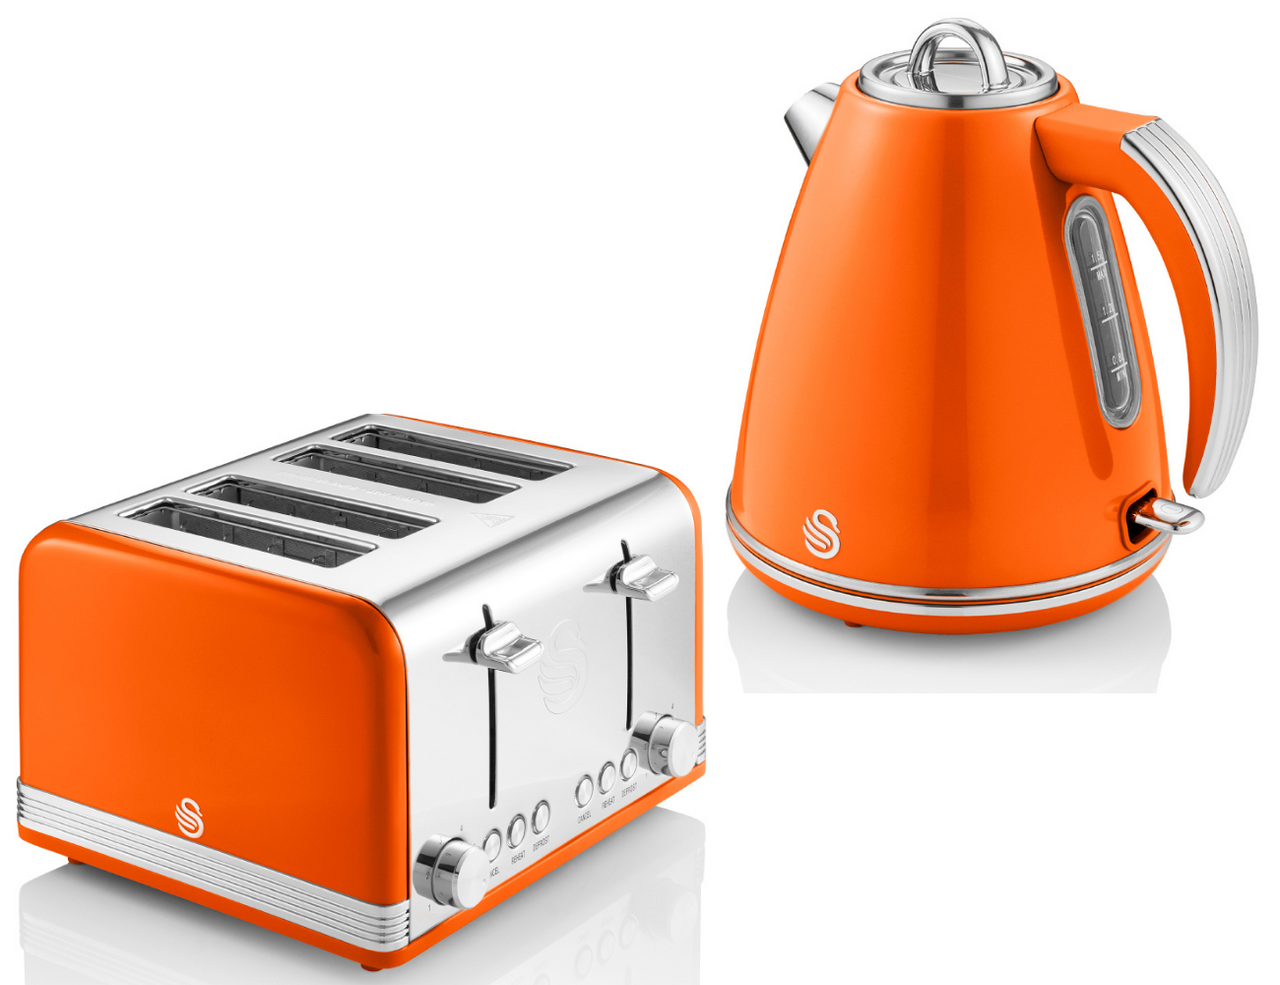 Swan Retro Orange Jug Kettle & 4 Slice Toaster - Vintage Kitchen Electrical Set